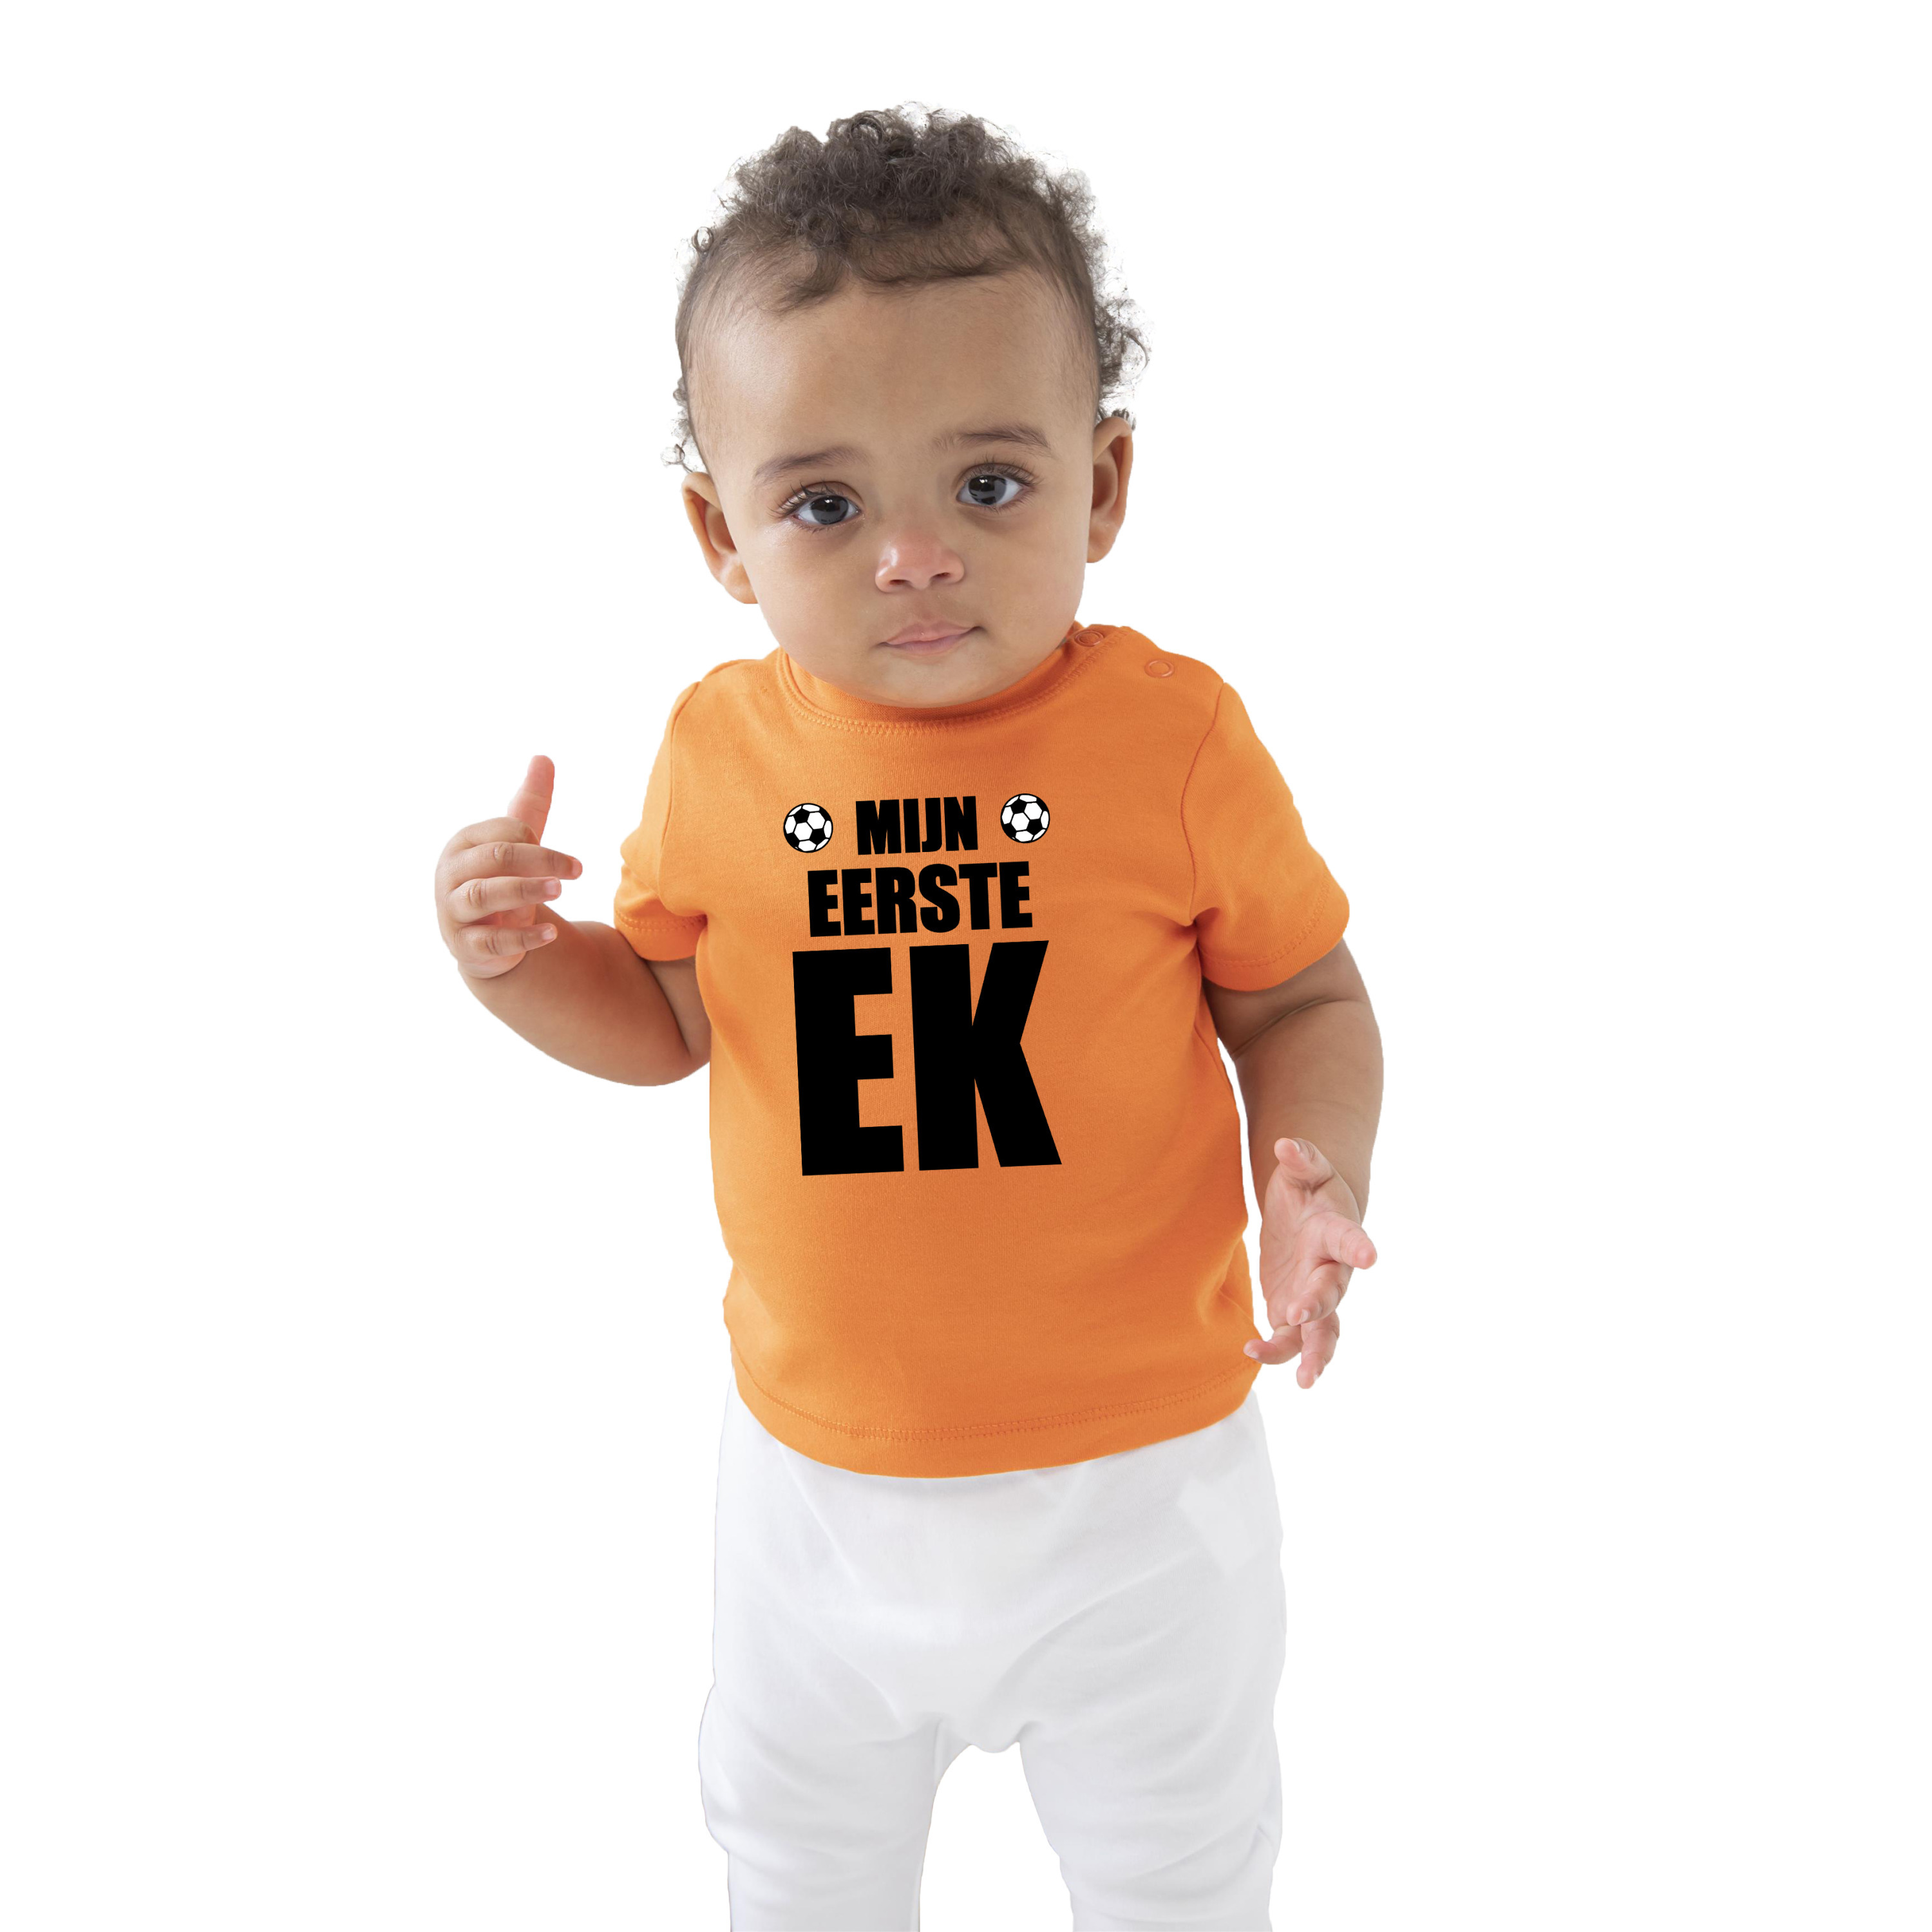 Mijn eerste ek fan shirt voor babys Holland Nederland EK WK supporter